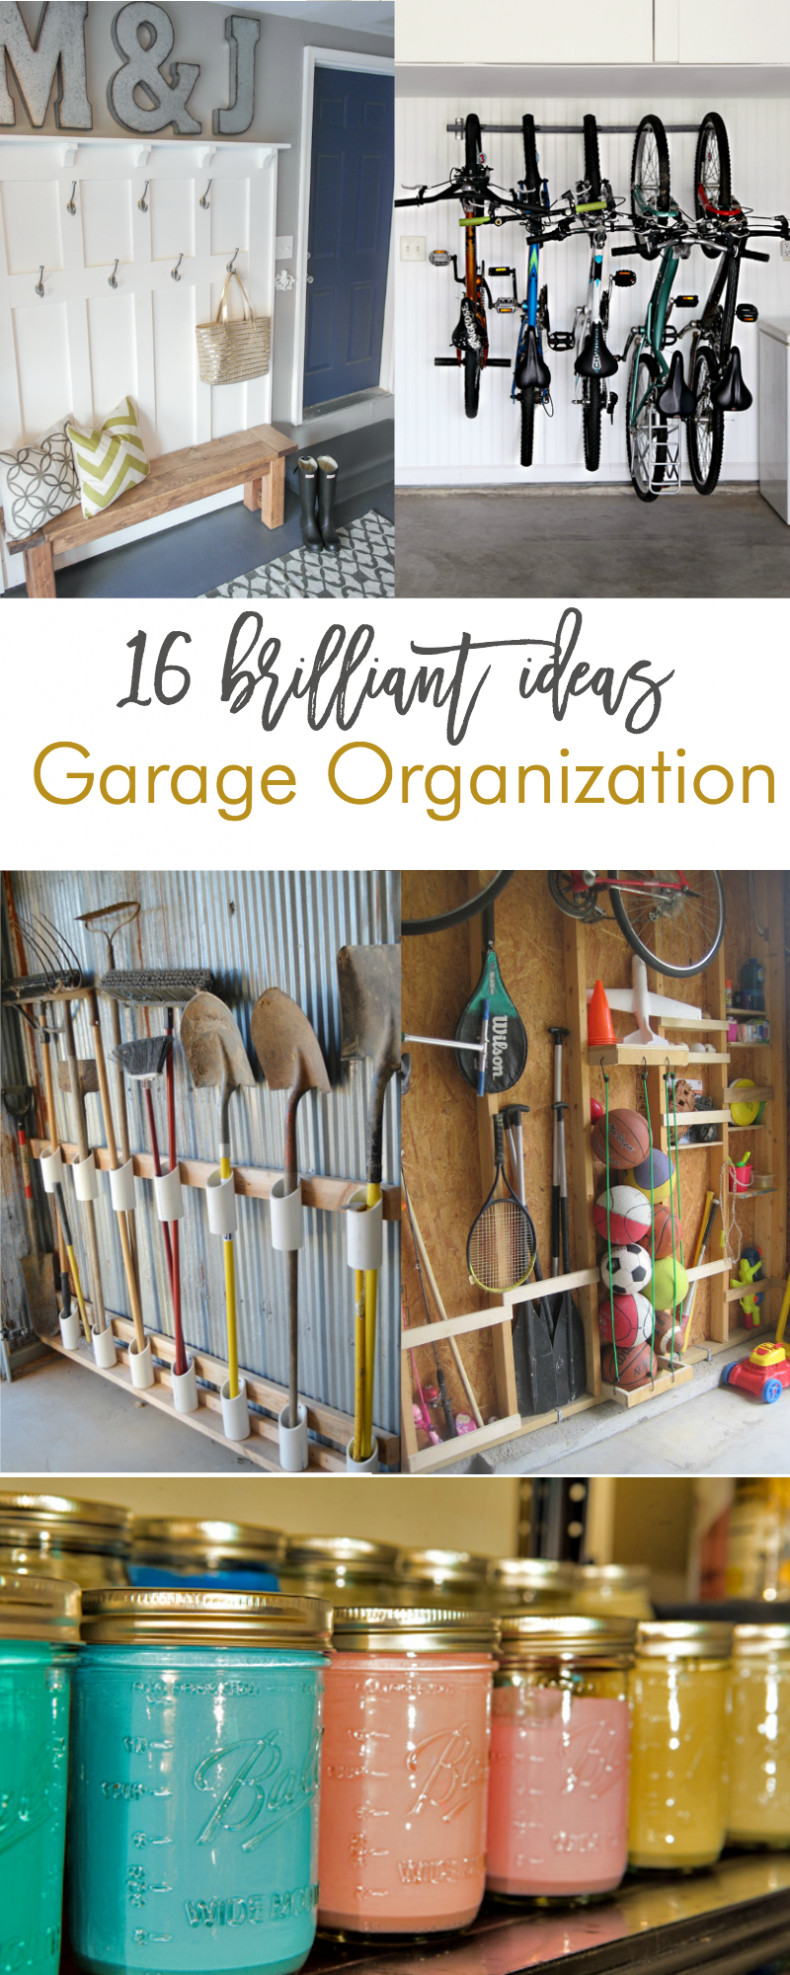 Ideas For Organizing Garage
 16 Brilliant DIY Garage Organization Ideas